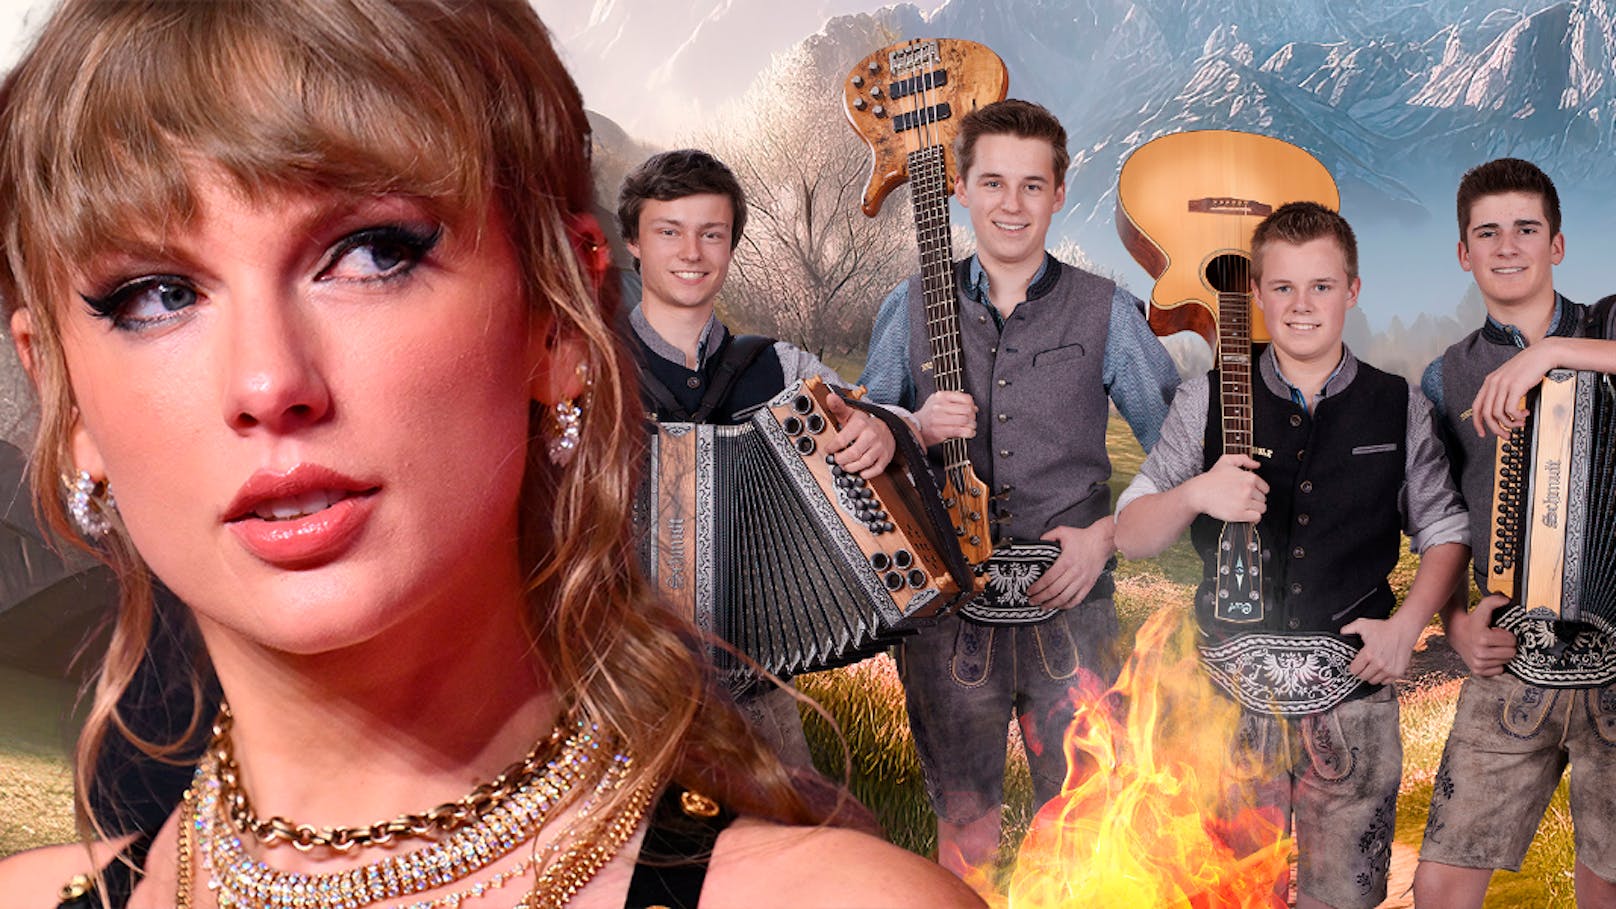 Vier junge Tiroler verheizen Taylor Swift auf YouTube